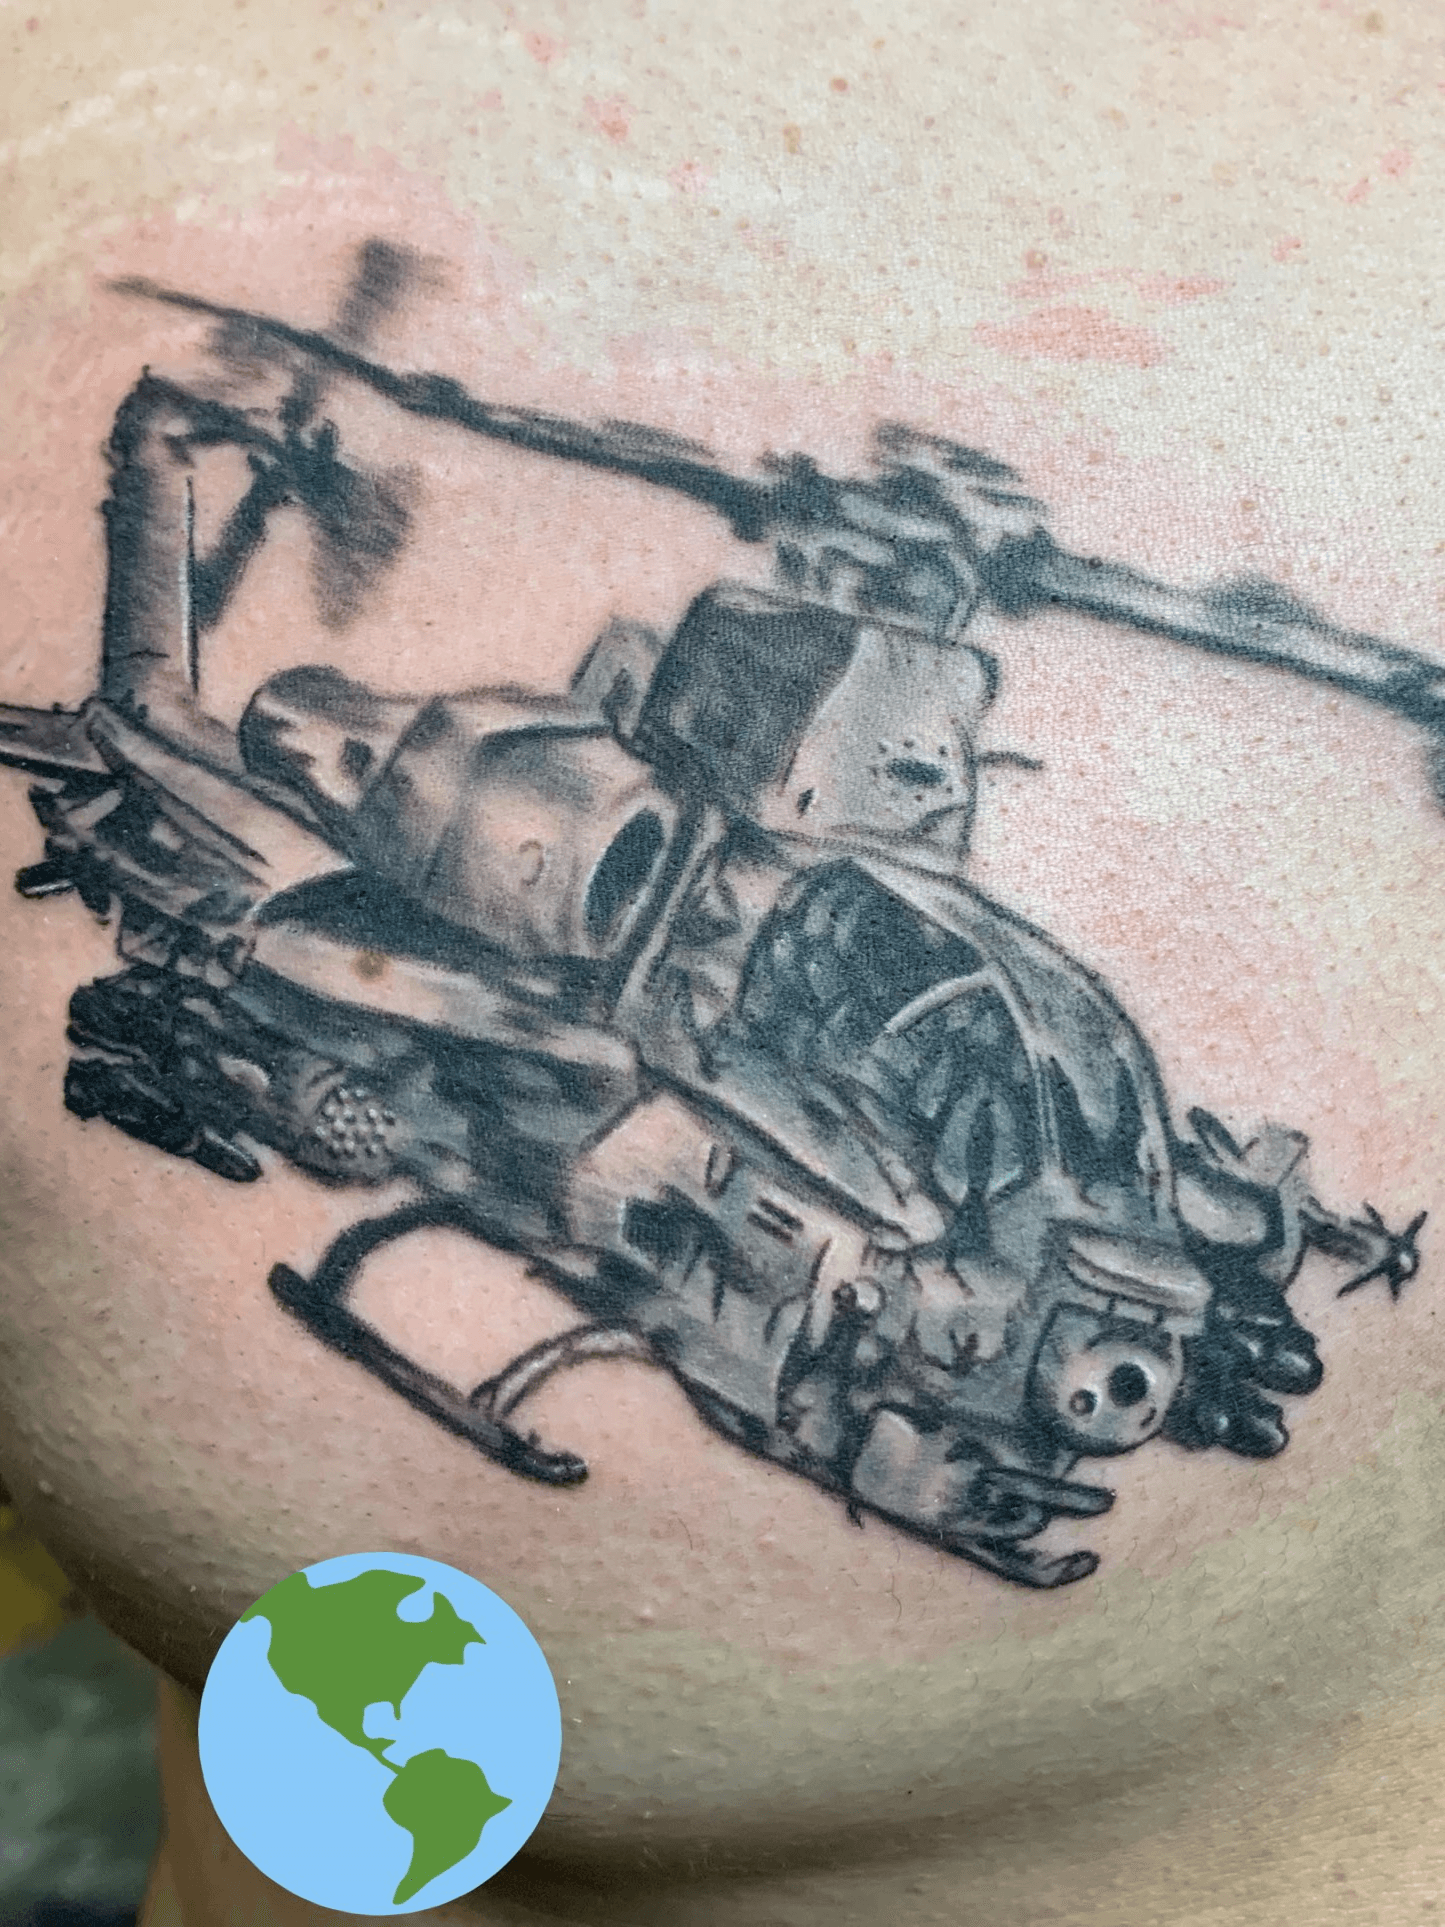 Apache Helicopter Tattoo  Tattoos Tattoo you Airplane tattoos